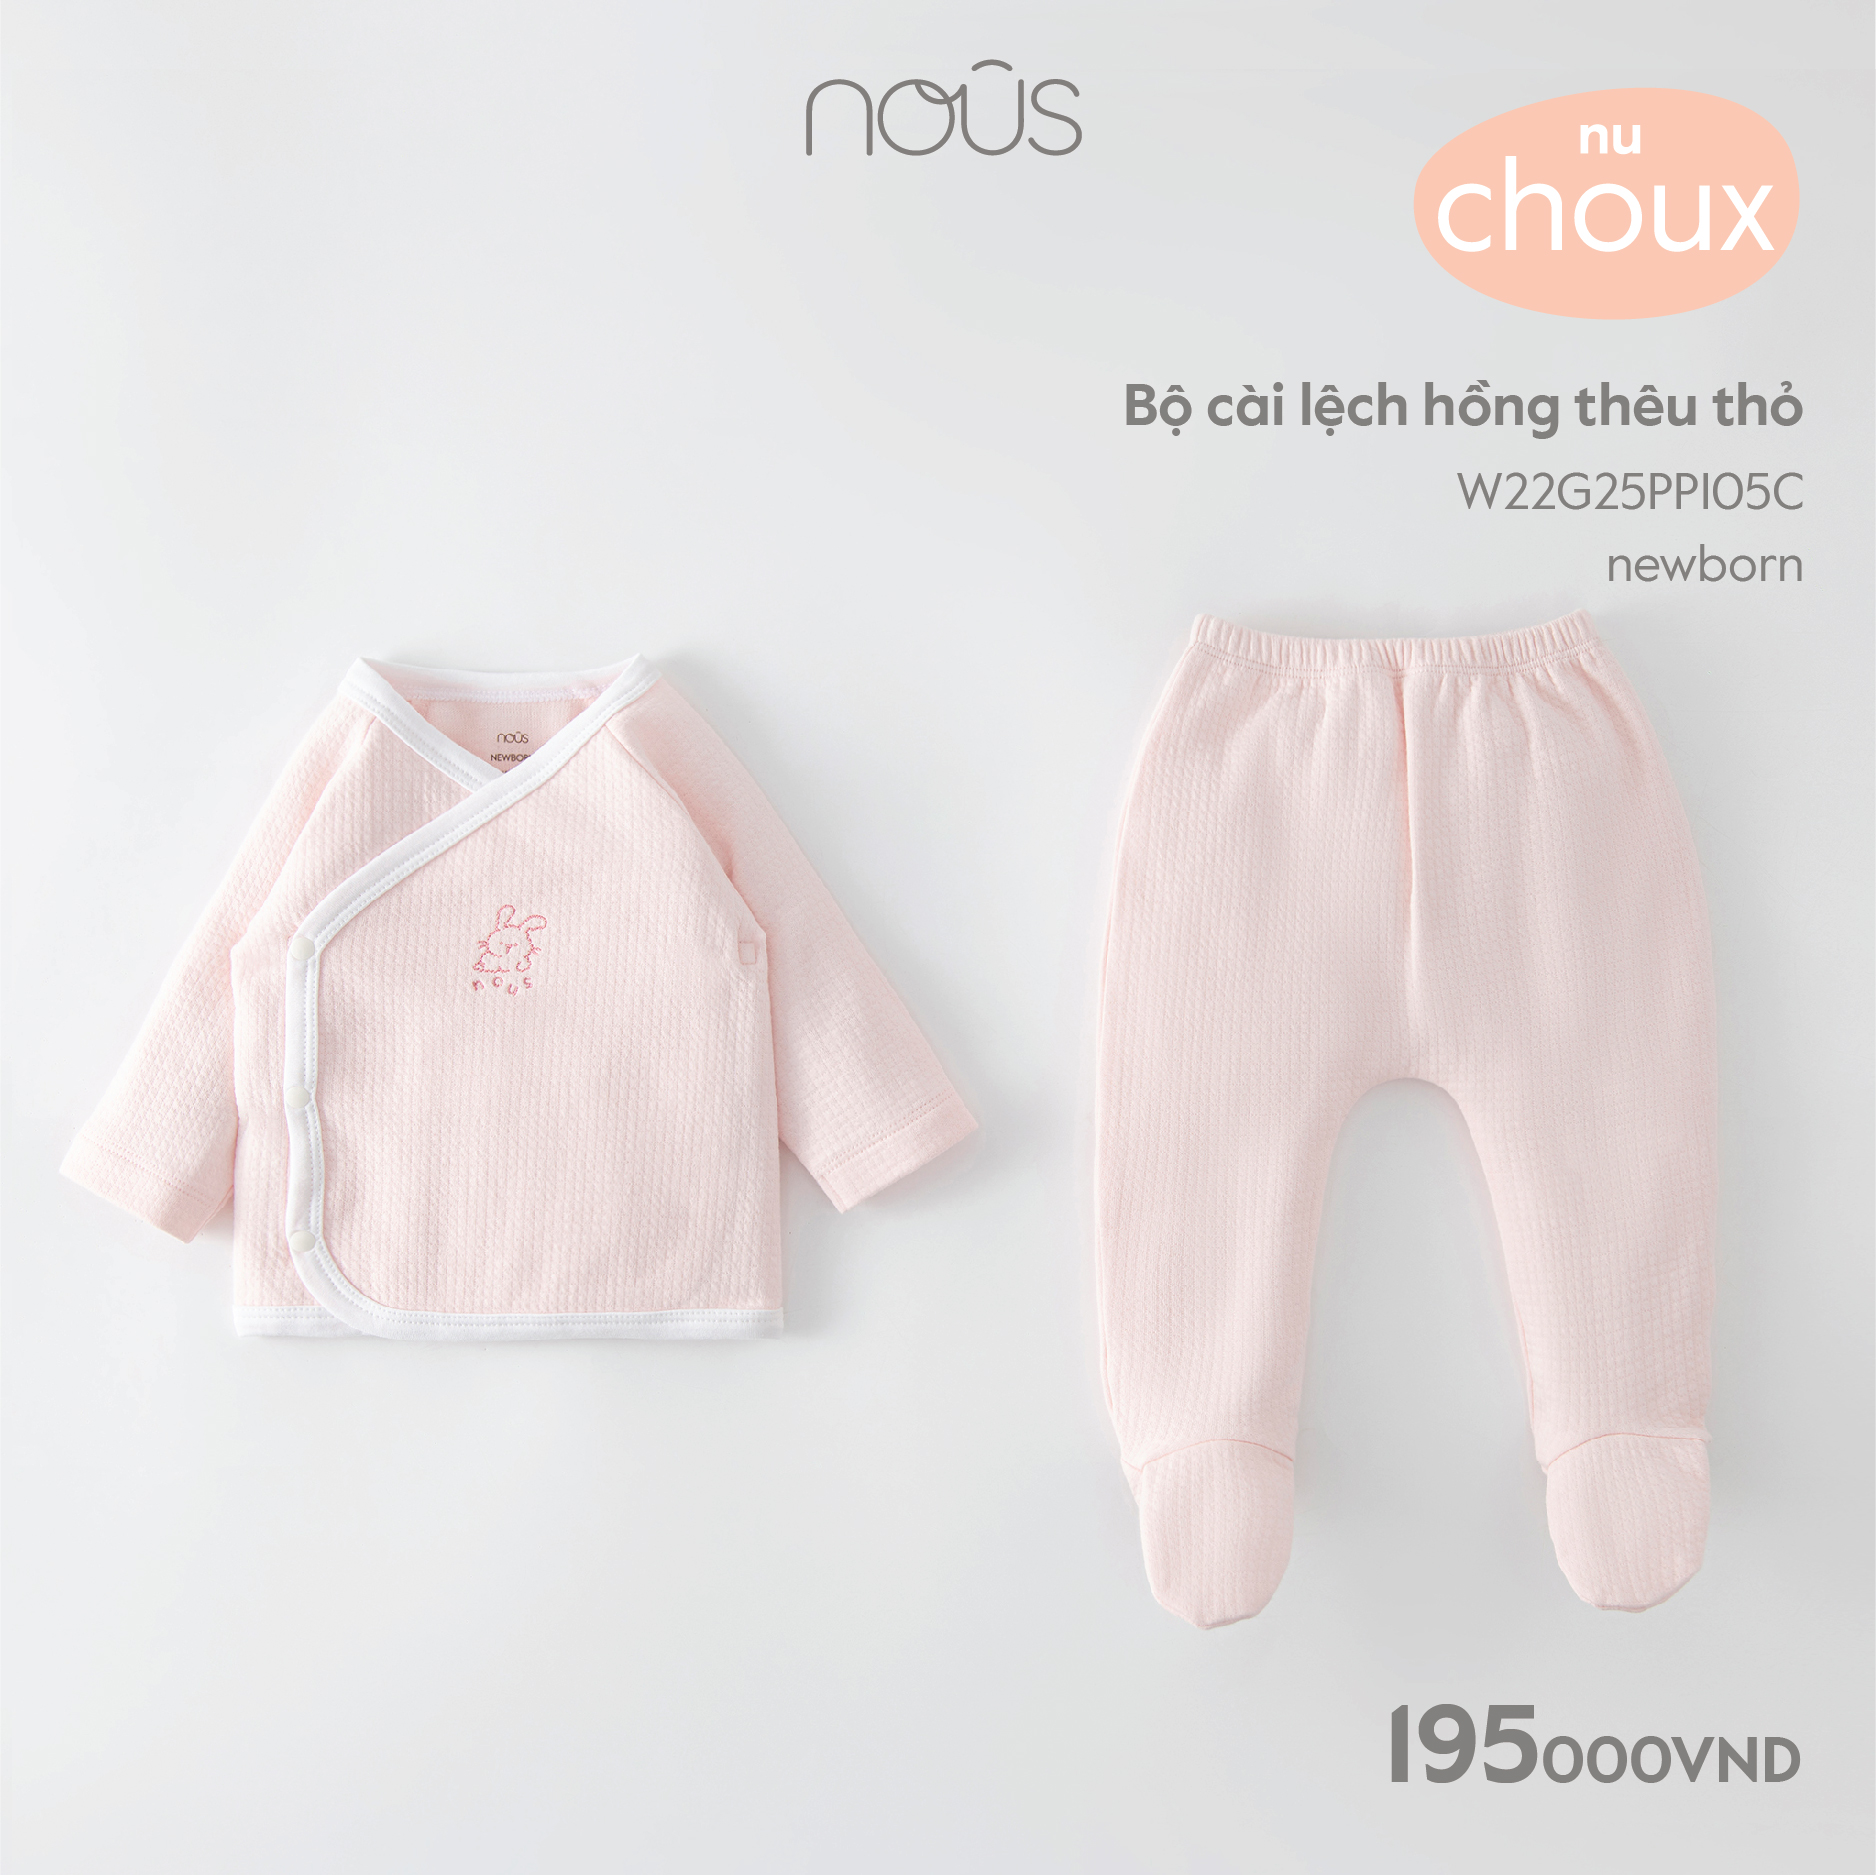 Bộ quần áo cài lệch thêu thỏ sơ sinh cho bé trai, bé gái Nous, chất liệu Nu Choux siêu mềm mại cho bé